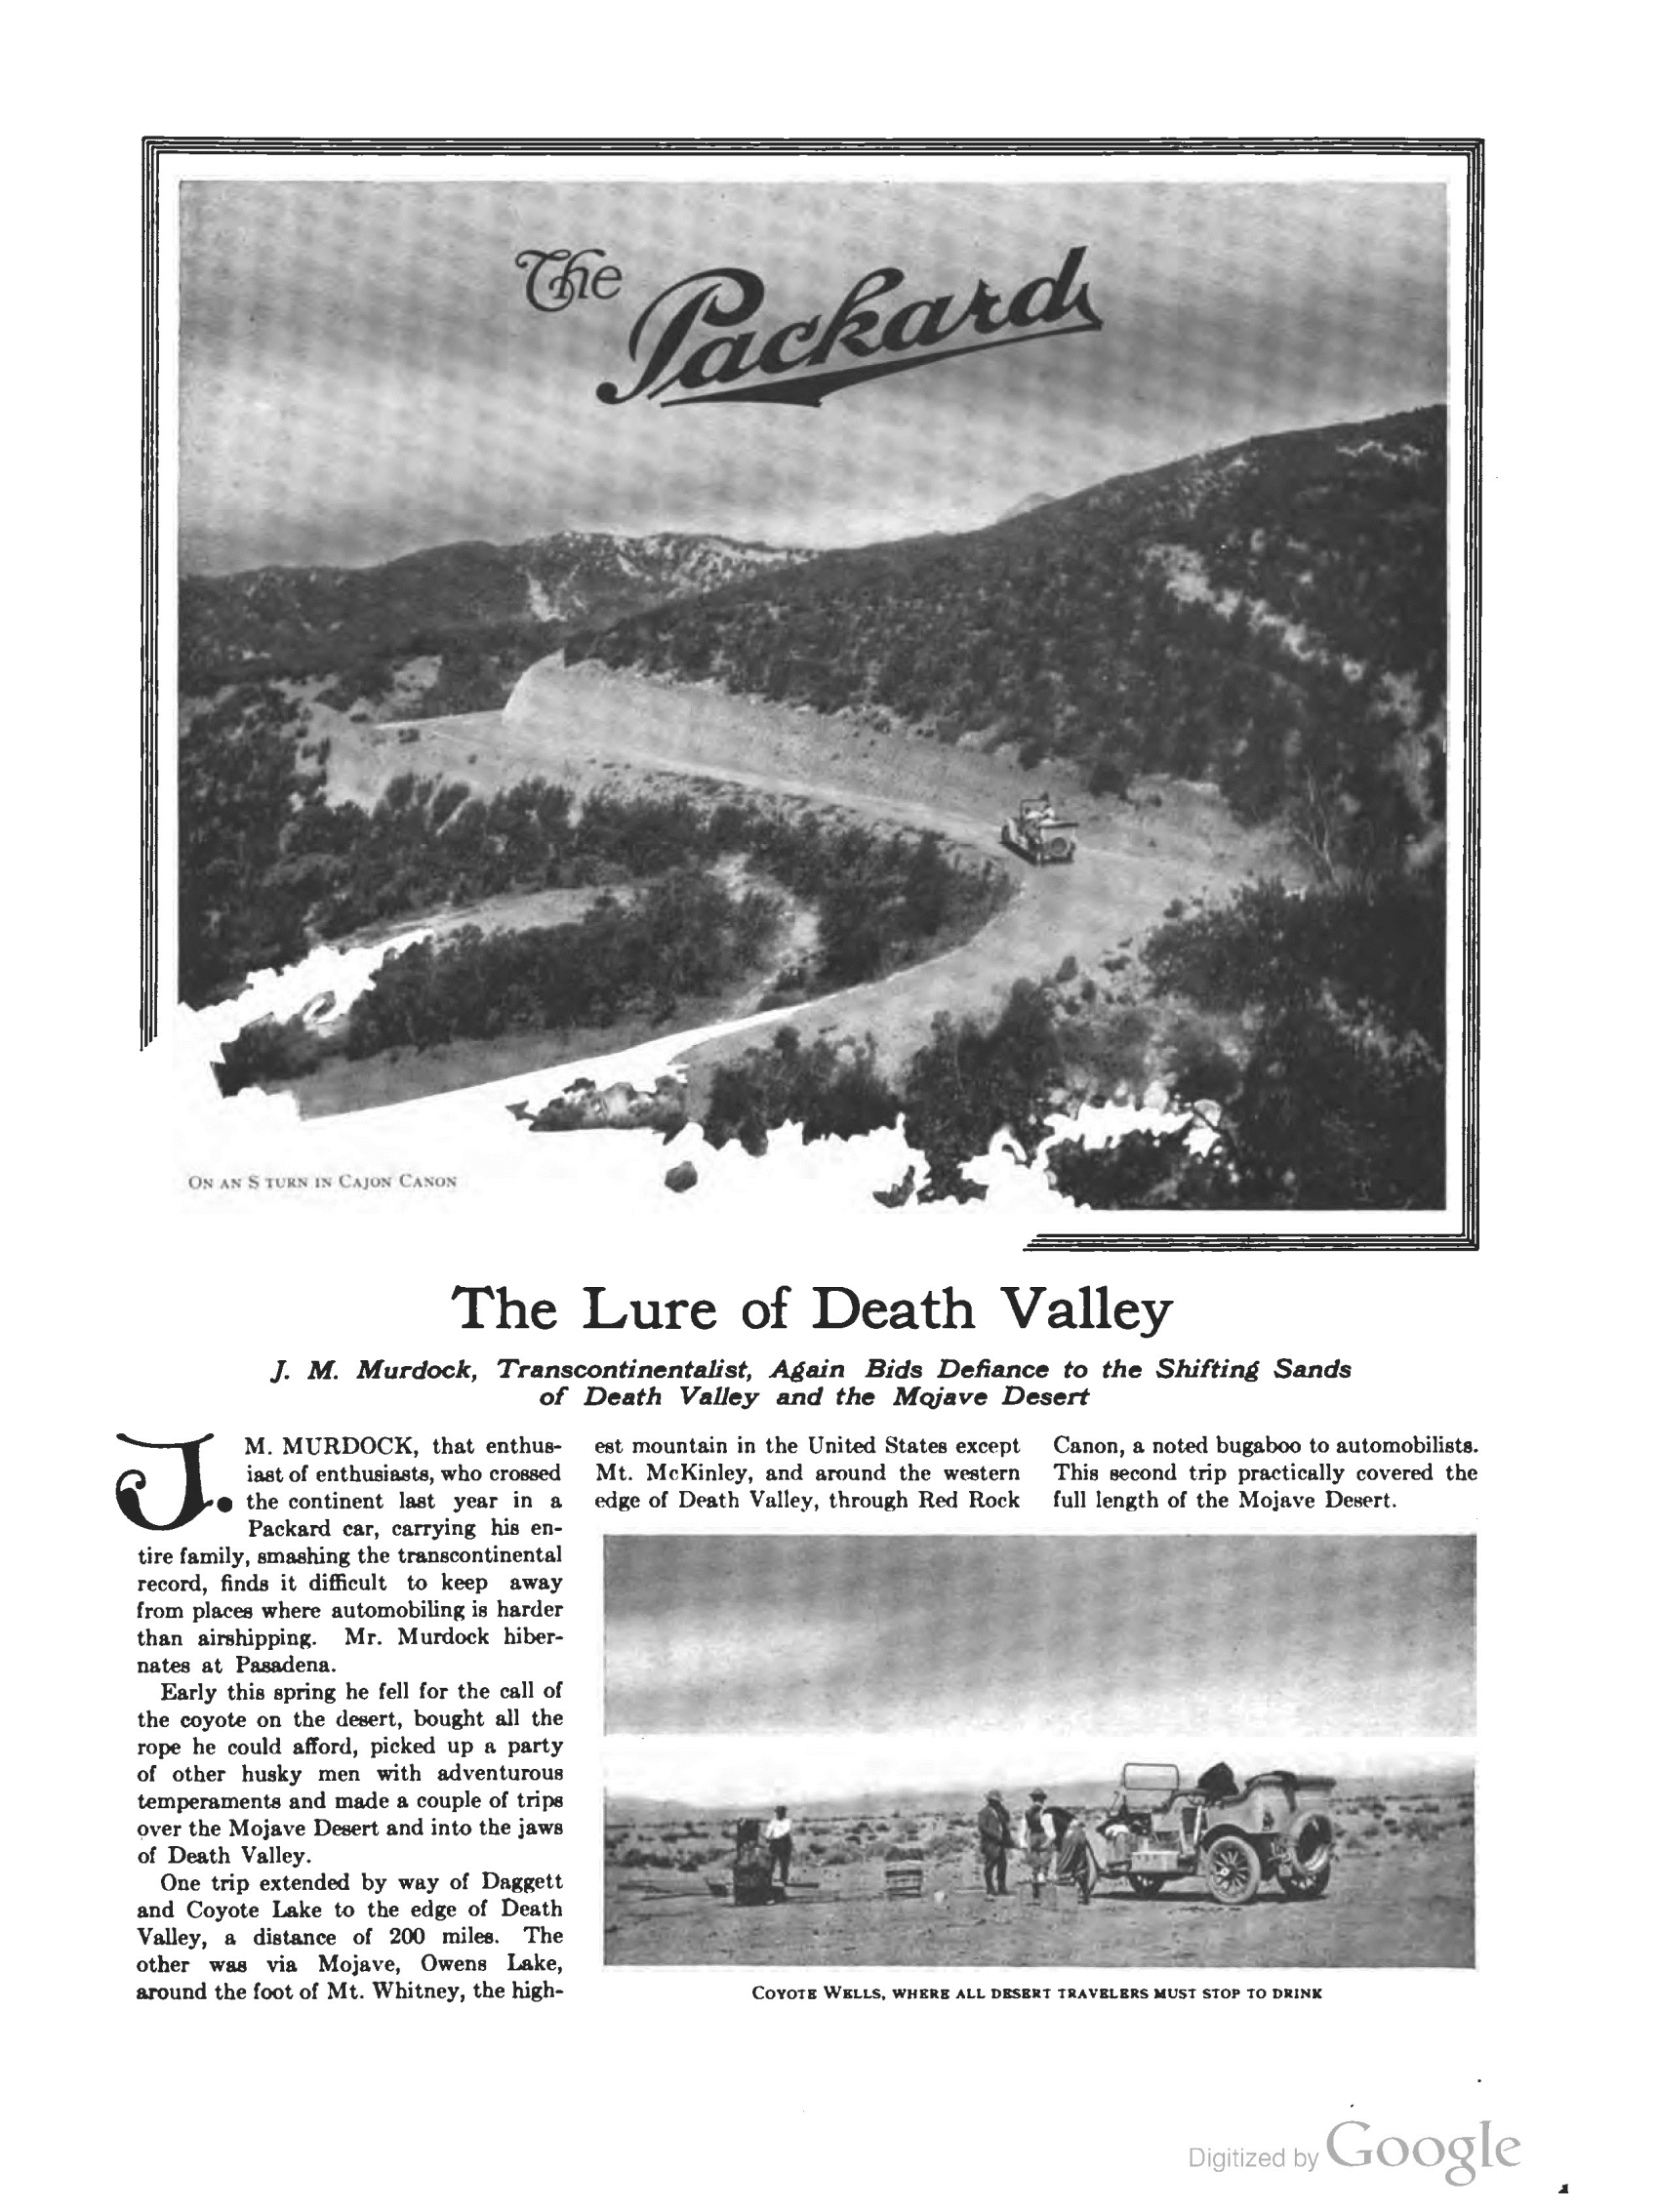 1910_The_Packard_Newsletter-051